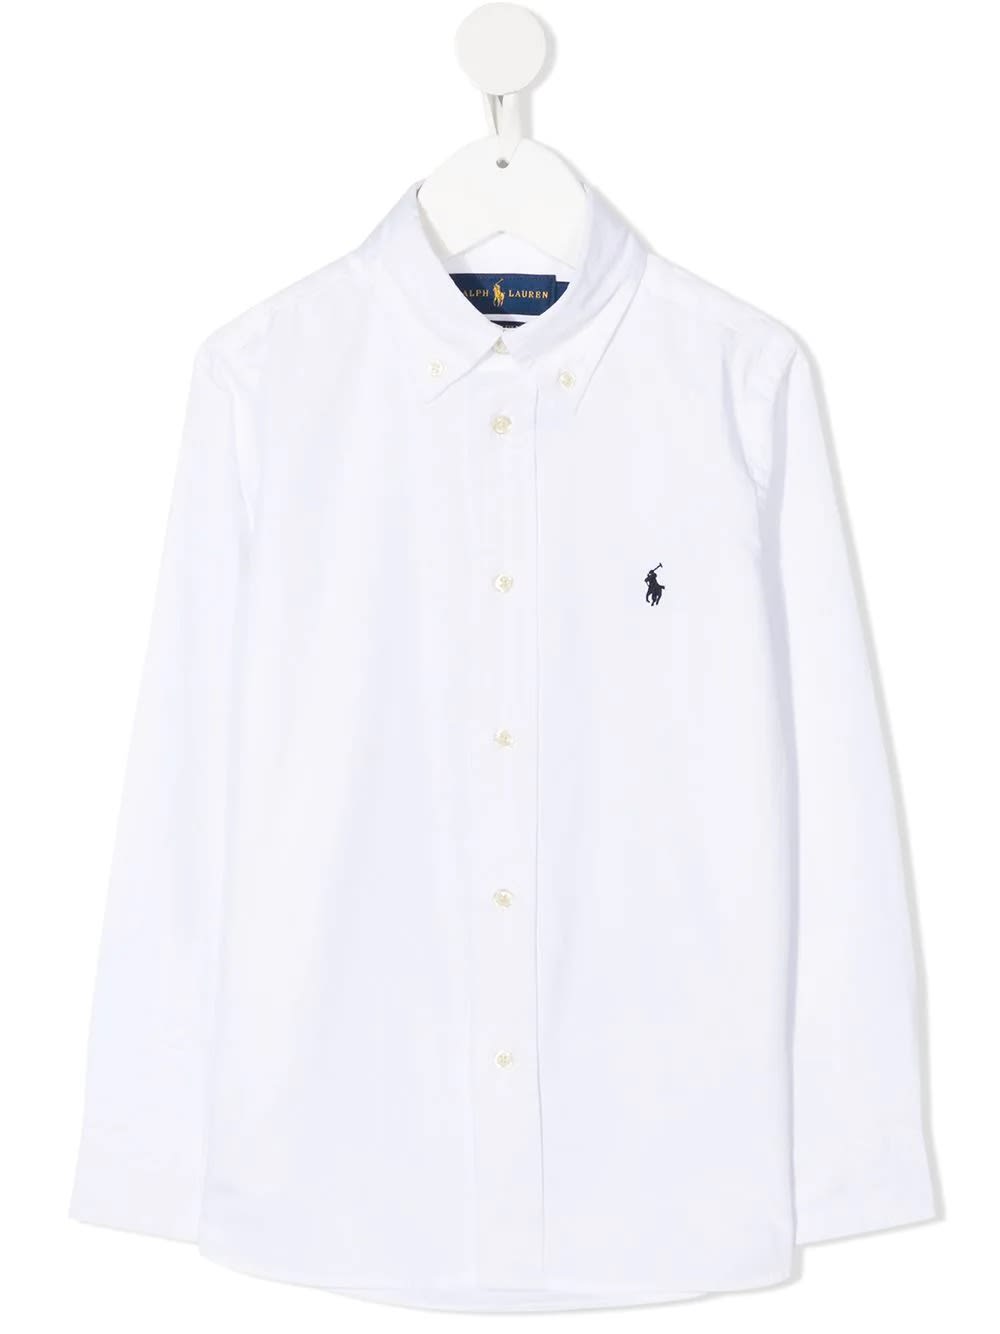 Ralph Lauren Kids Oxford Shirt In Slim-fit Cotton